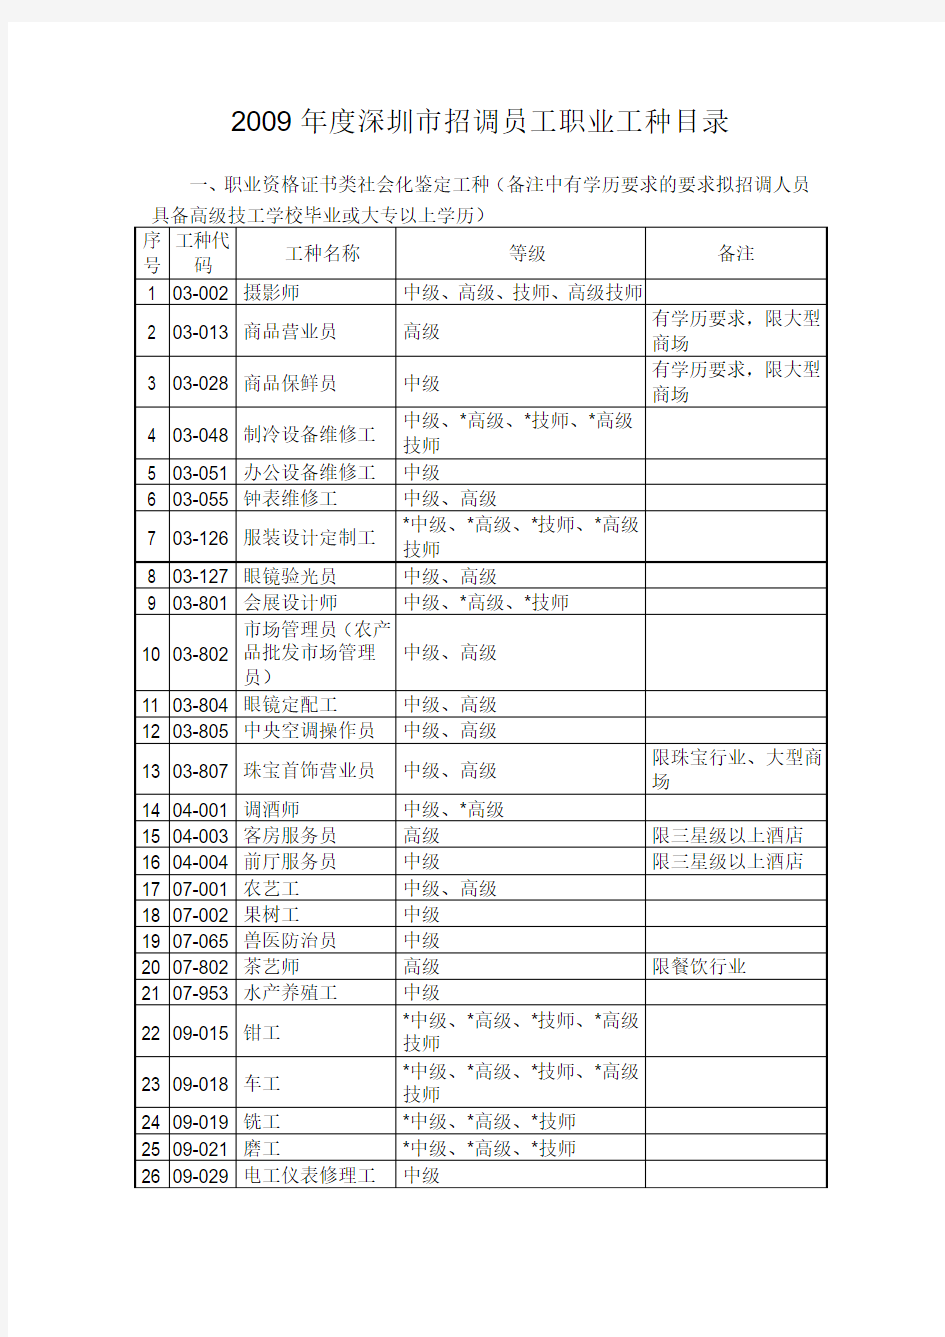 2009年度深圳市招调员工职业工种目录(090210)